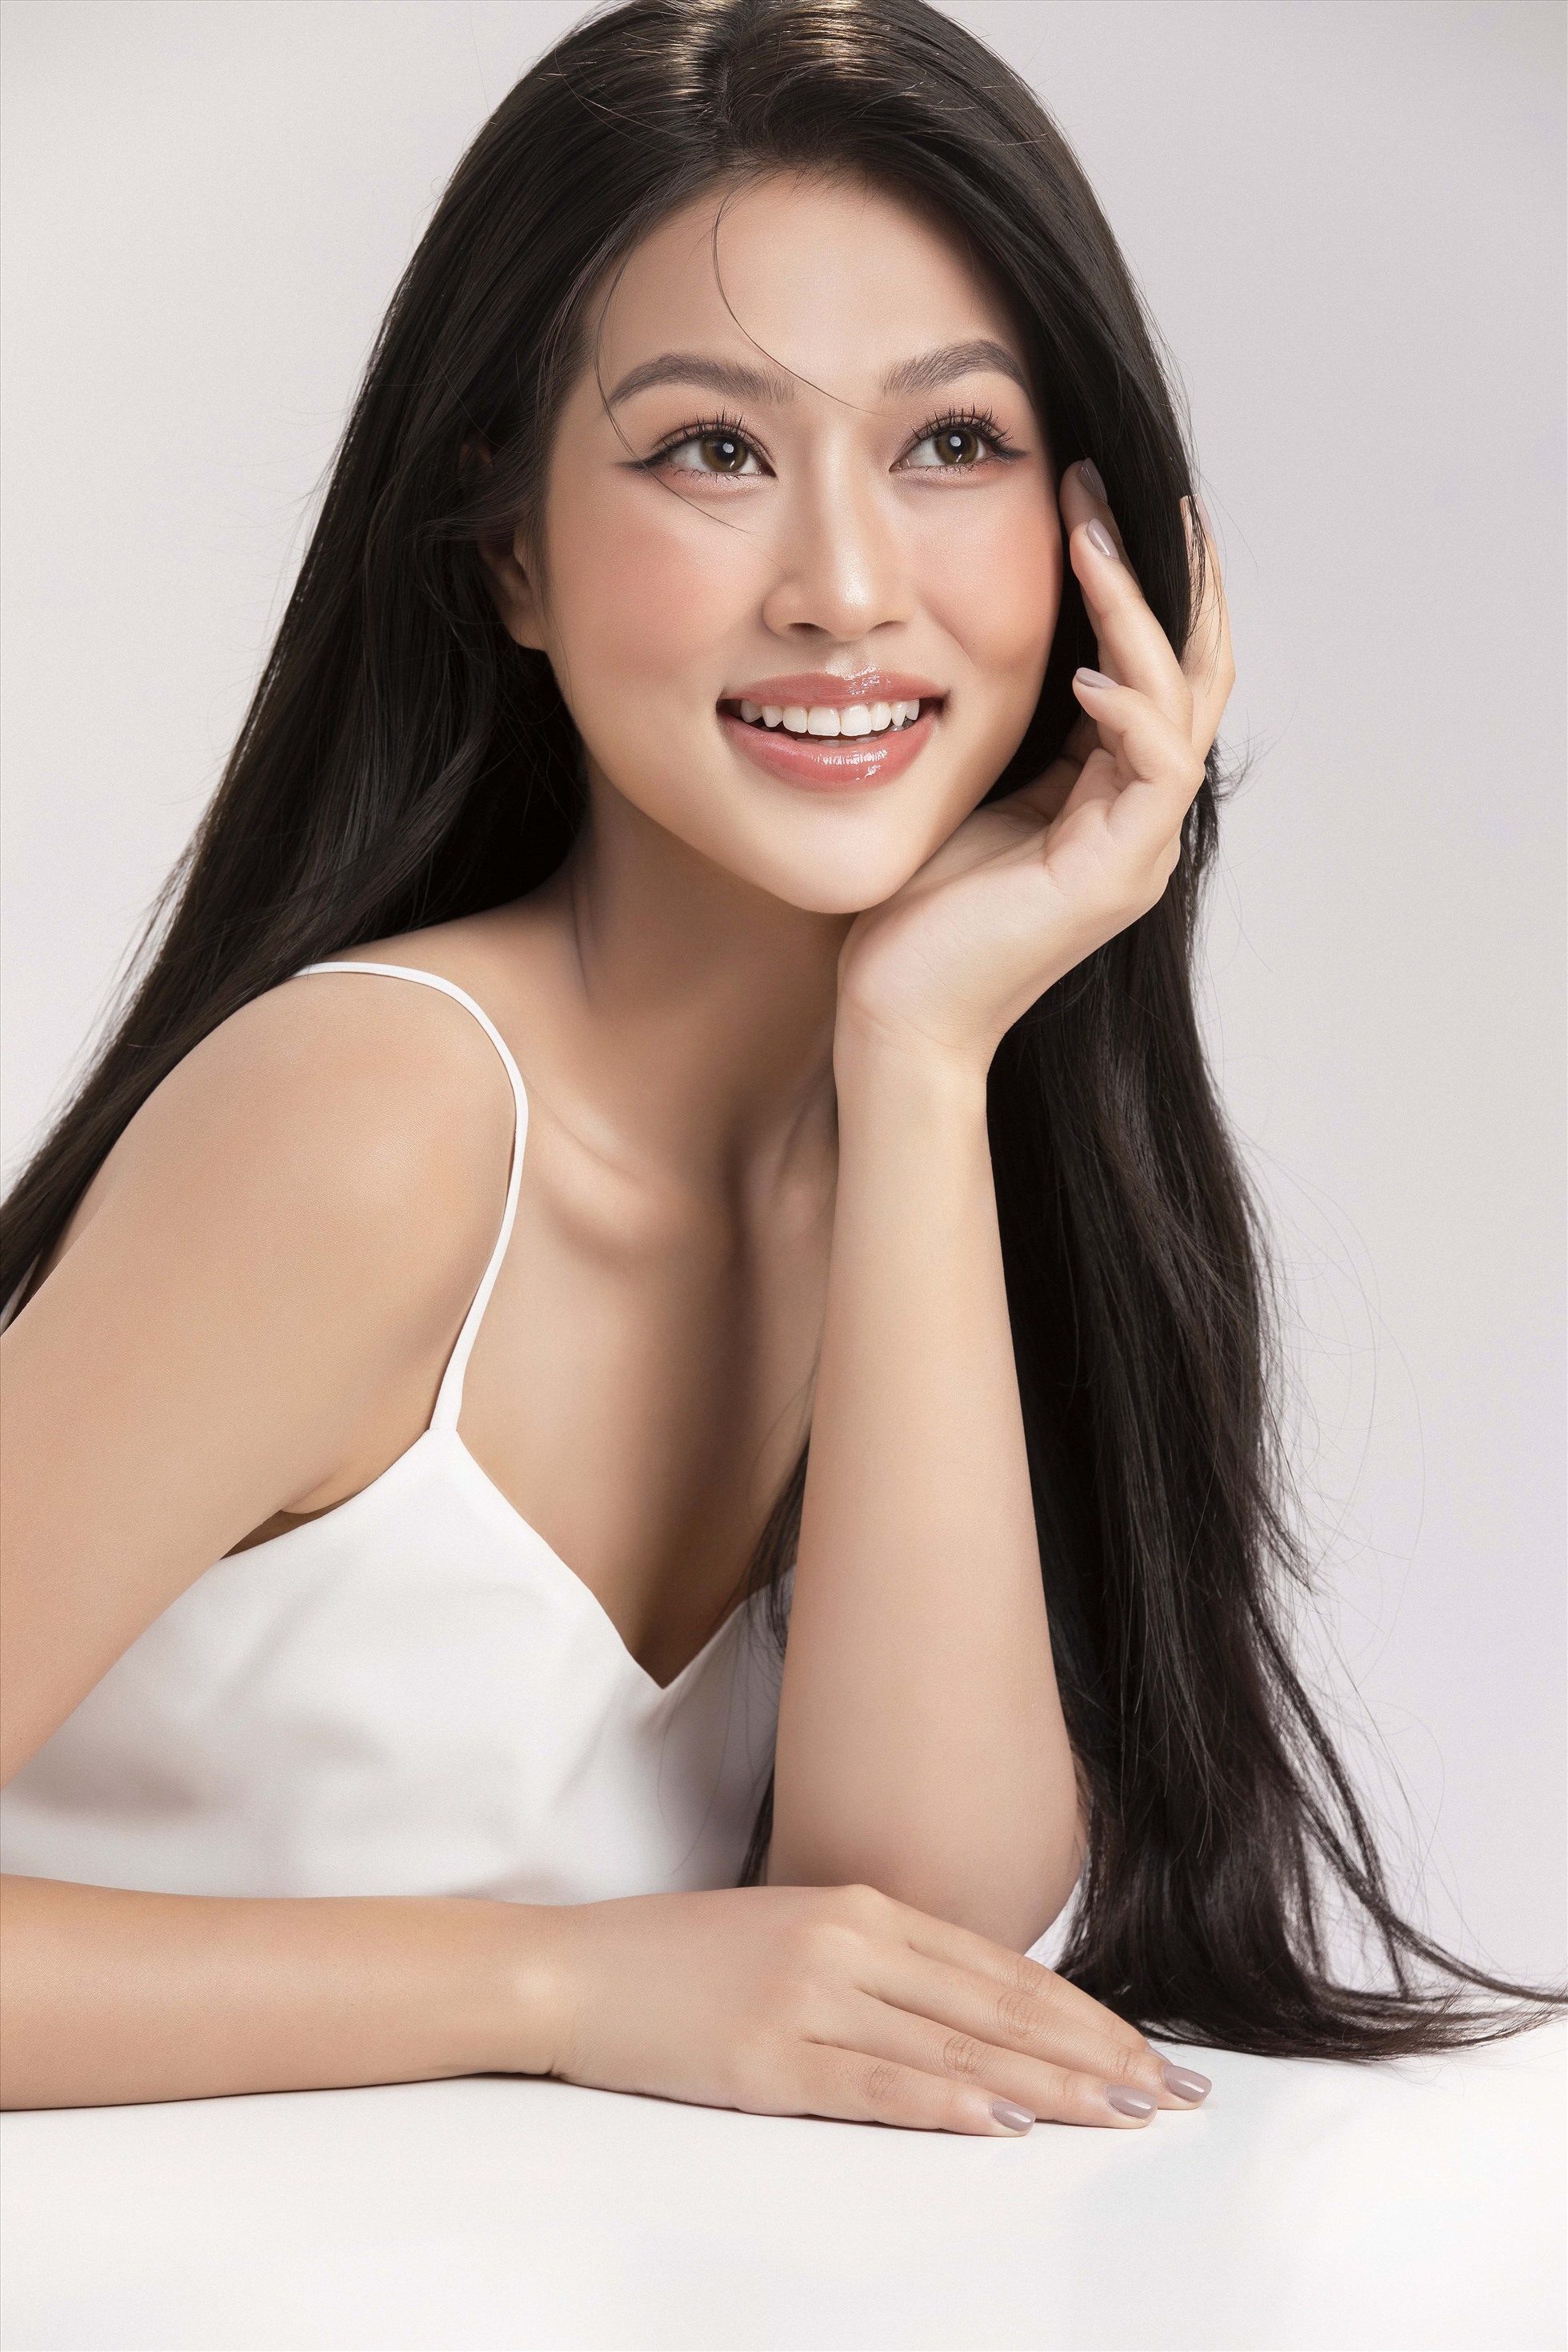 Gần đây, nàng hậu cùng các chị em trong Top 5 Hoa hậu Hòa bình Việt Nam 2022 đã có những hoạt động đầu tiên cùng nhau sau đăng quang. Sắp tới, người hâm mộ của cô nàng sẽ còn đón nhận một Đoàn Thiên  n mới mẻ với những vai trò, hình ảnh đa dạng hơn nữa.